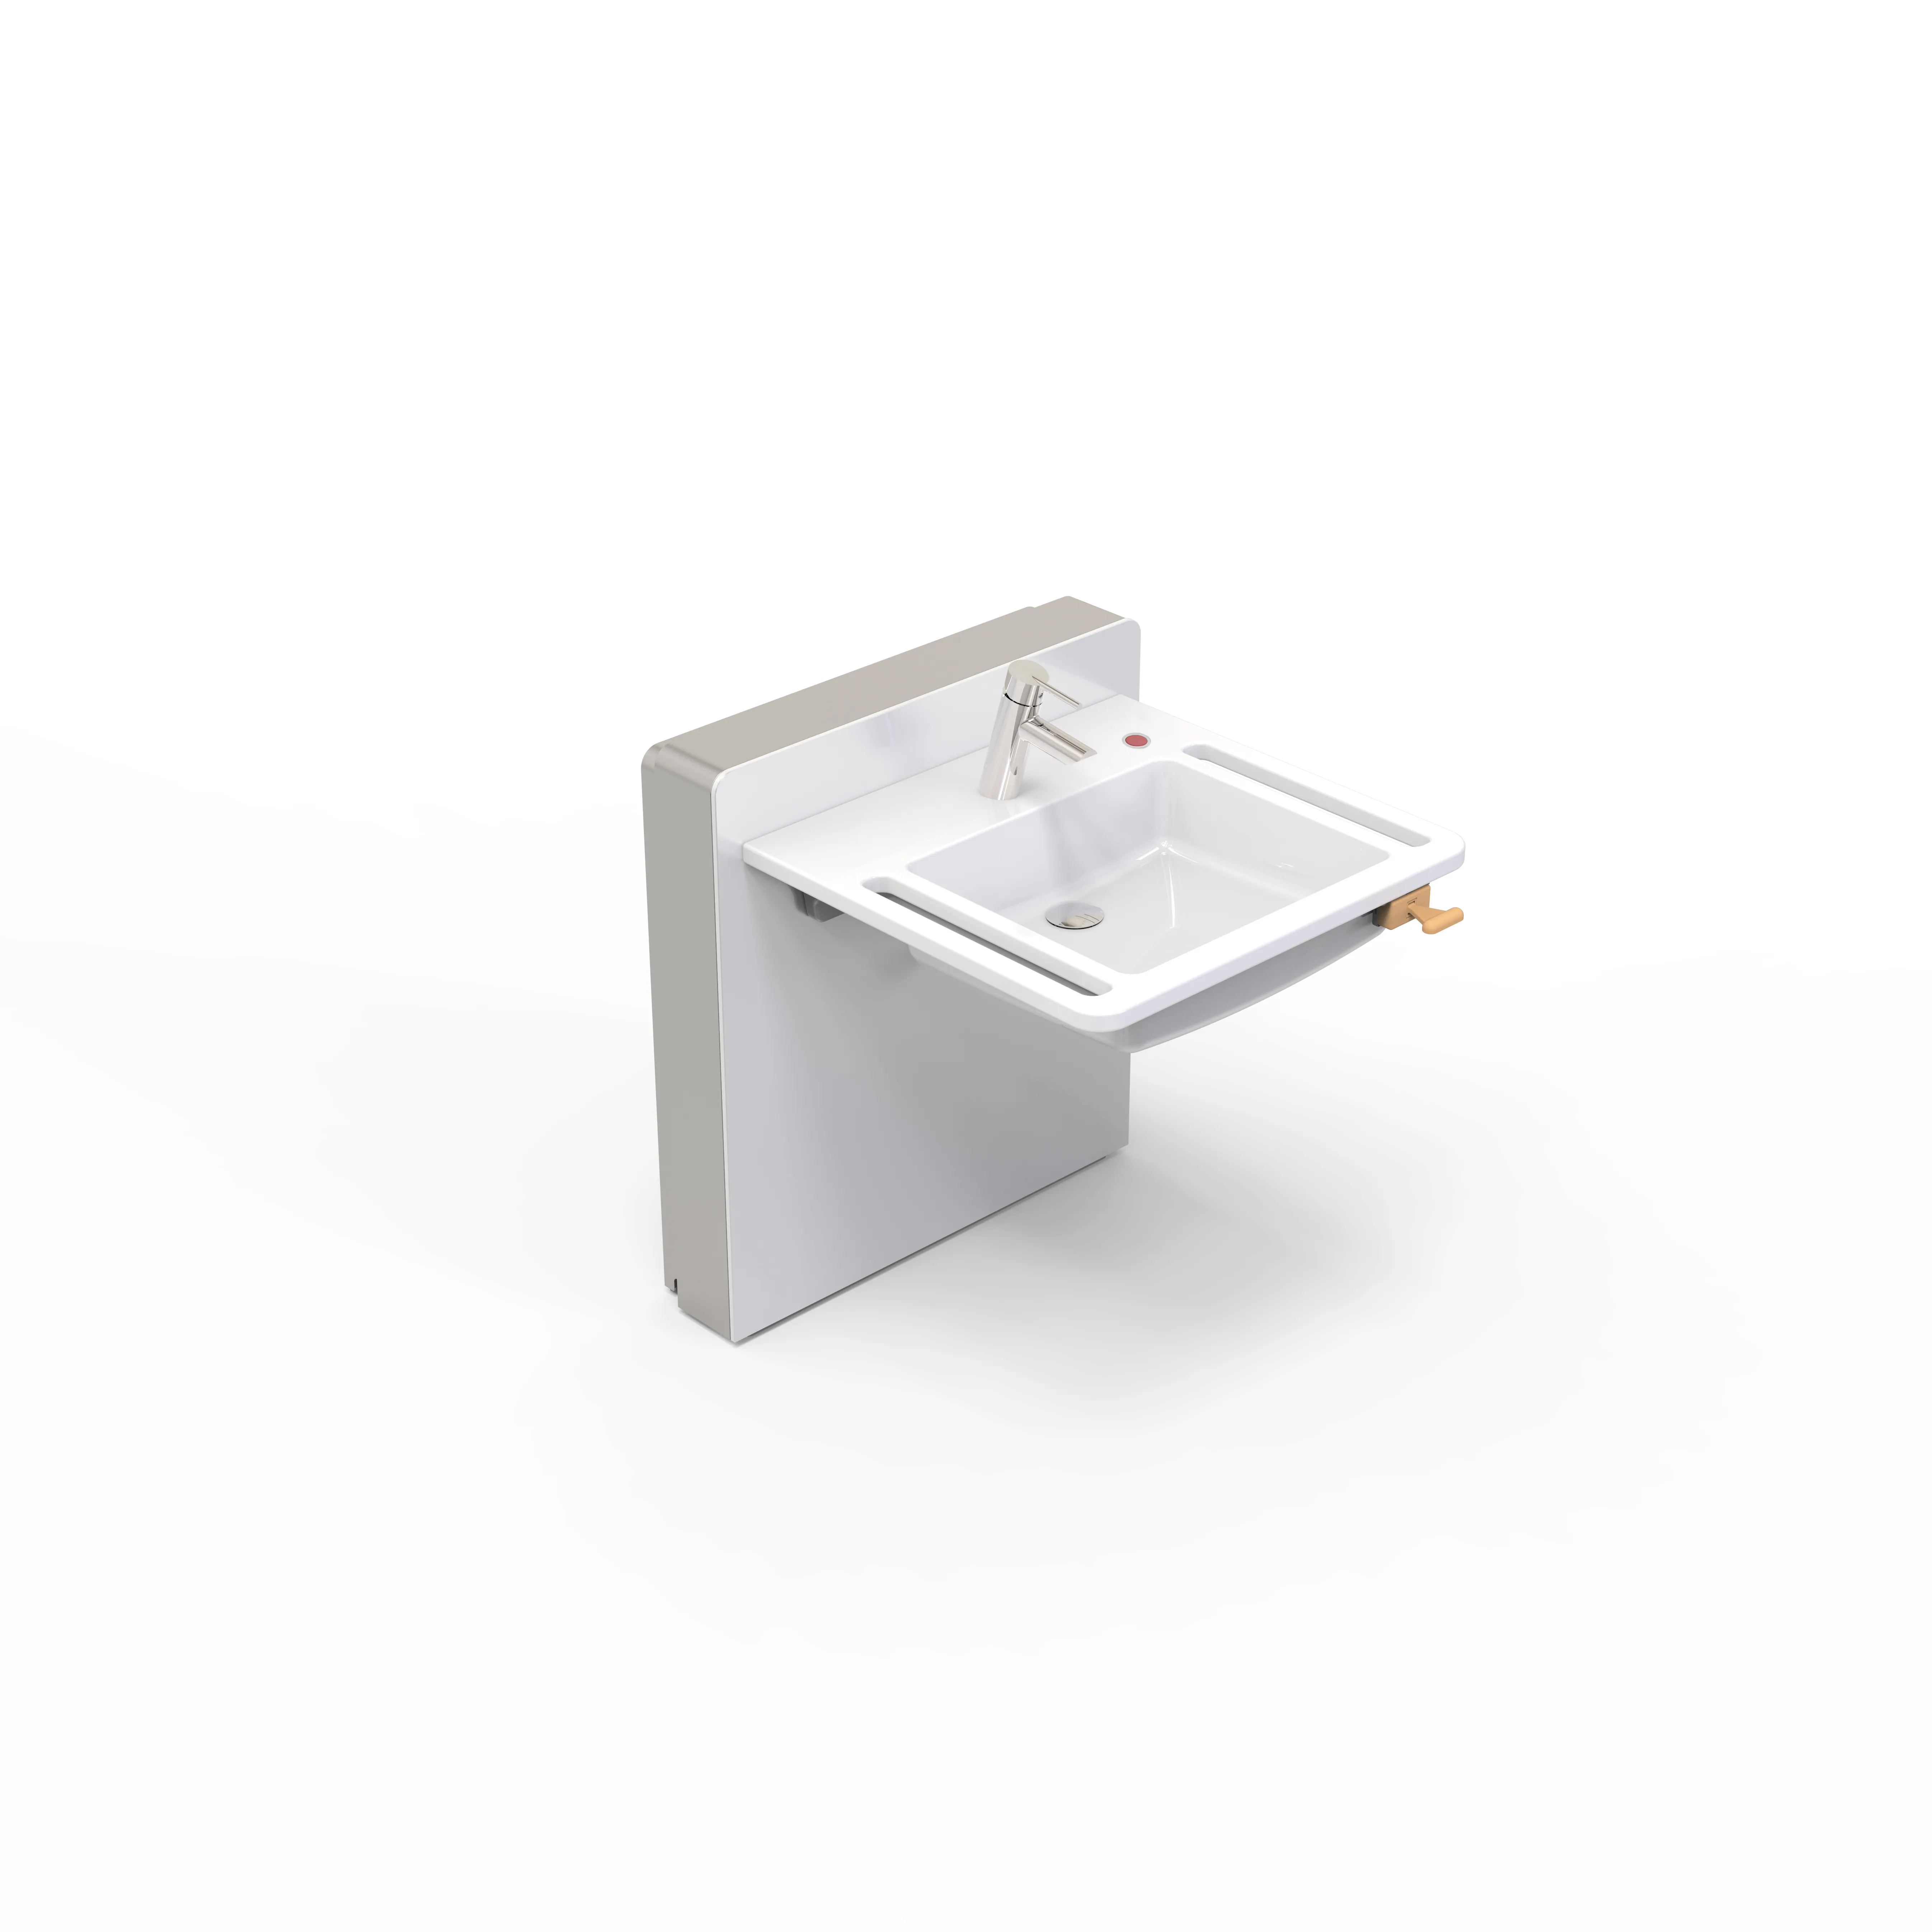 Modern hareketlilik banyo mutfak dikdörtgen elektronik lavabo kaldırıcı bir düğme su lavabo yaşlı ve engelli için bakım